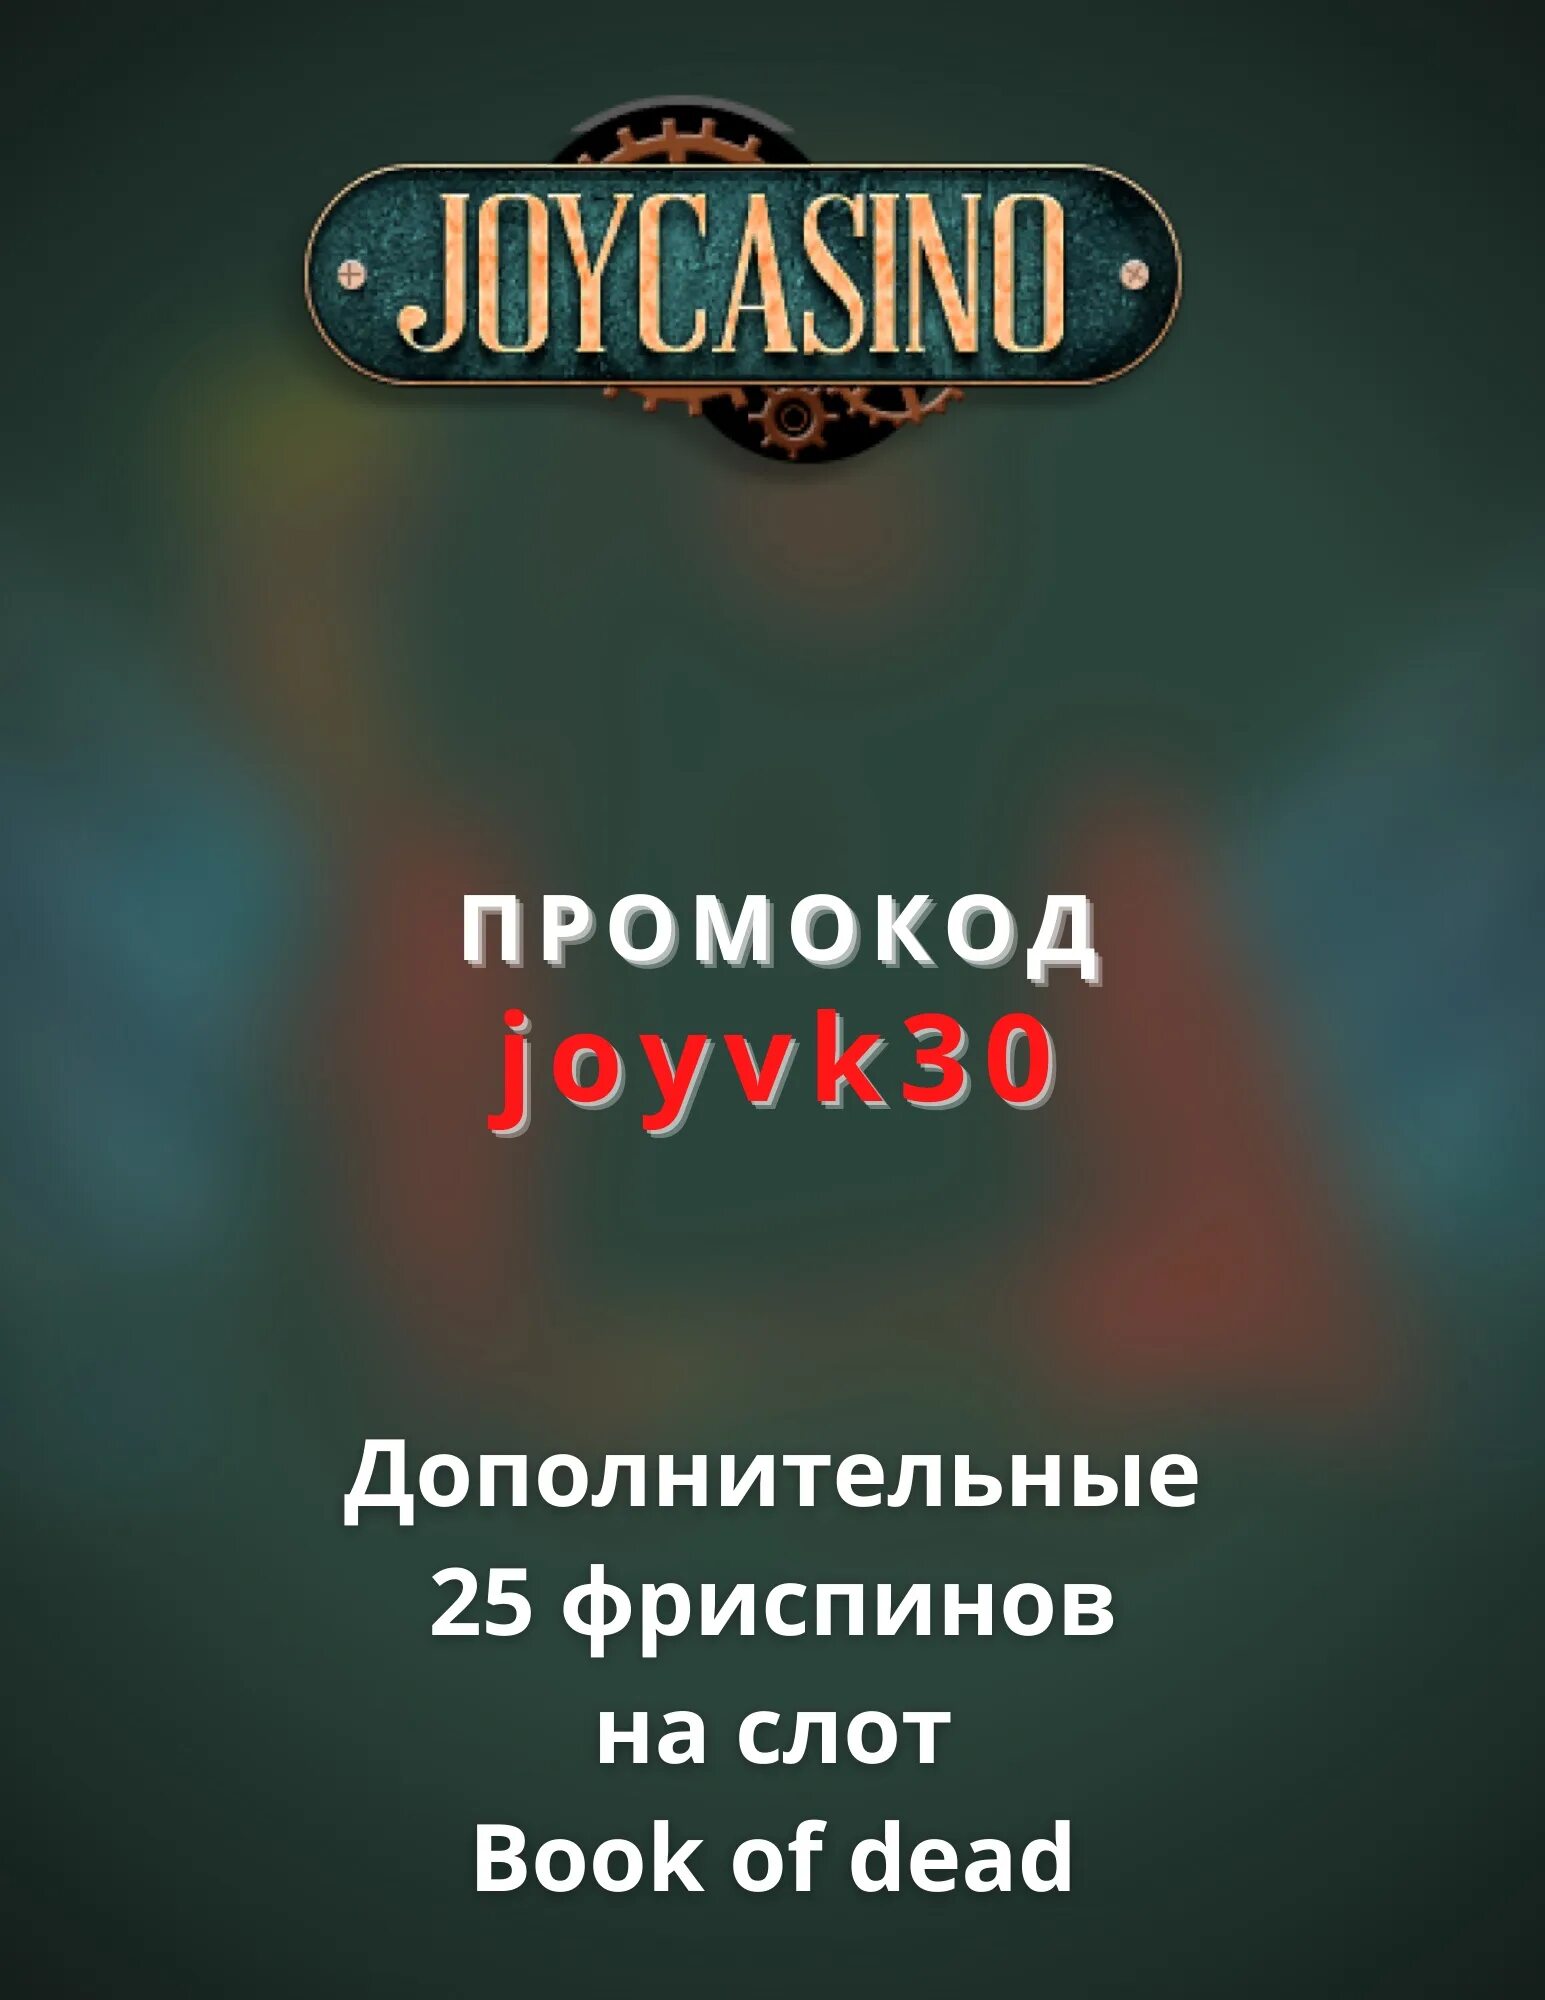 Joycasino мобильная версия joycasino бонус. Джойказино промокод. Промо код Joycasino. Joycasino бездепозитный бонус. Промокод Джойказино на 2022.